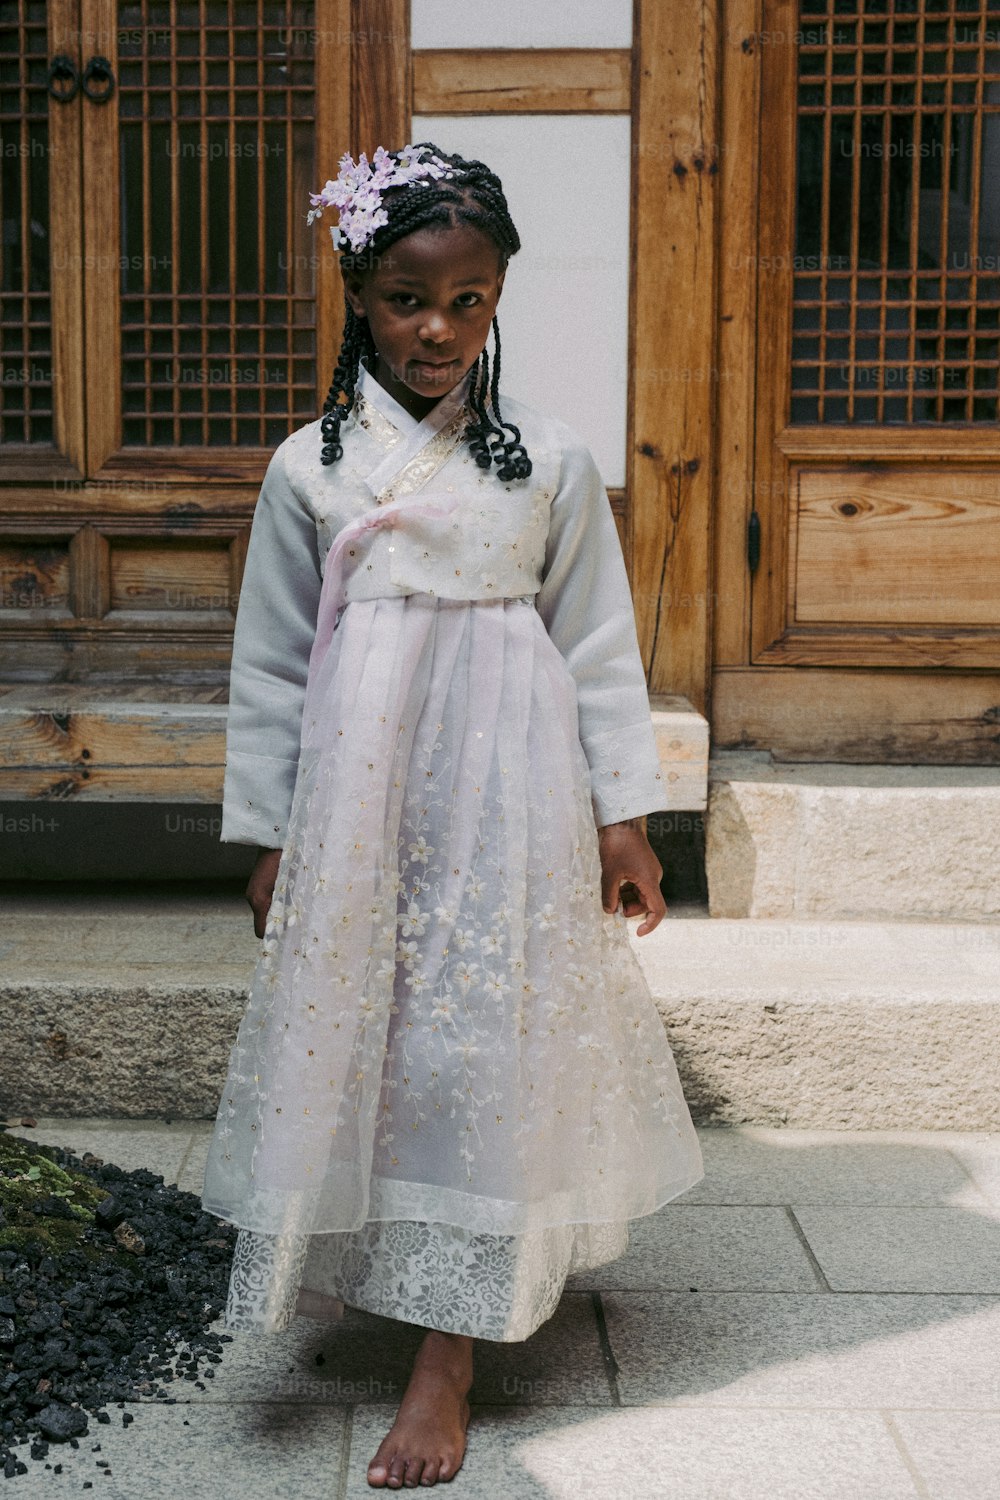 Ein kleines Mädchen in einem Kleid, das auf einem Bürgersteig steht